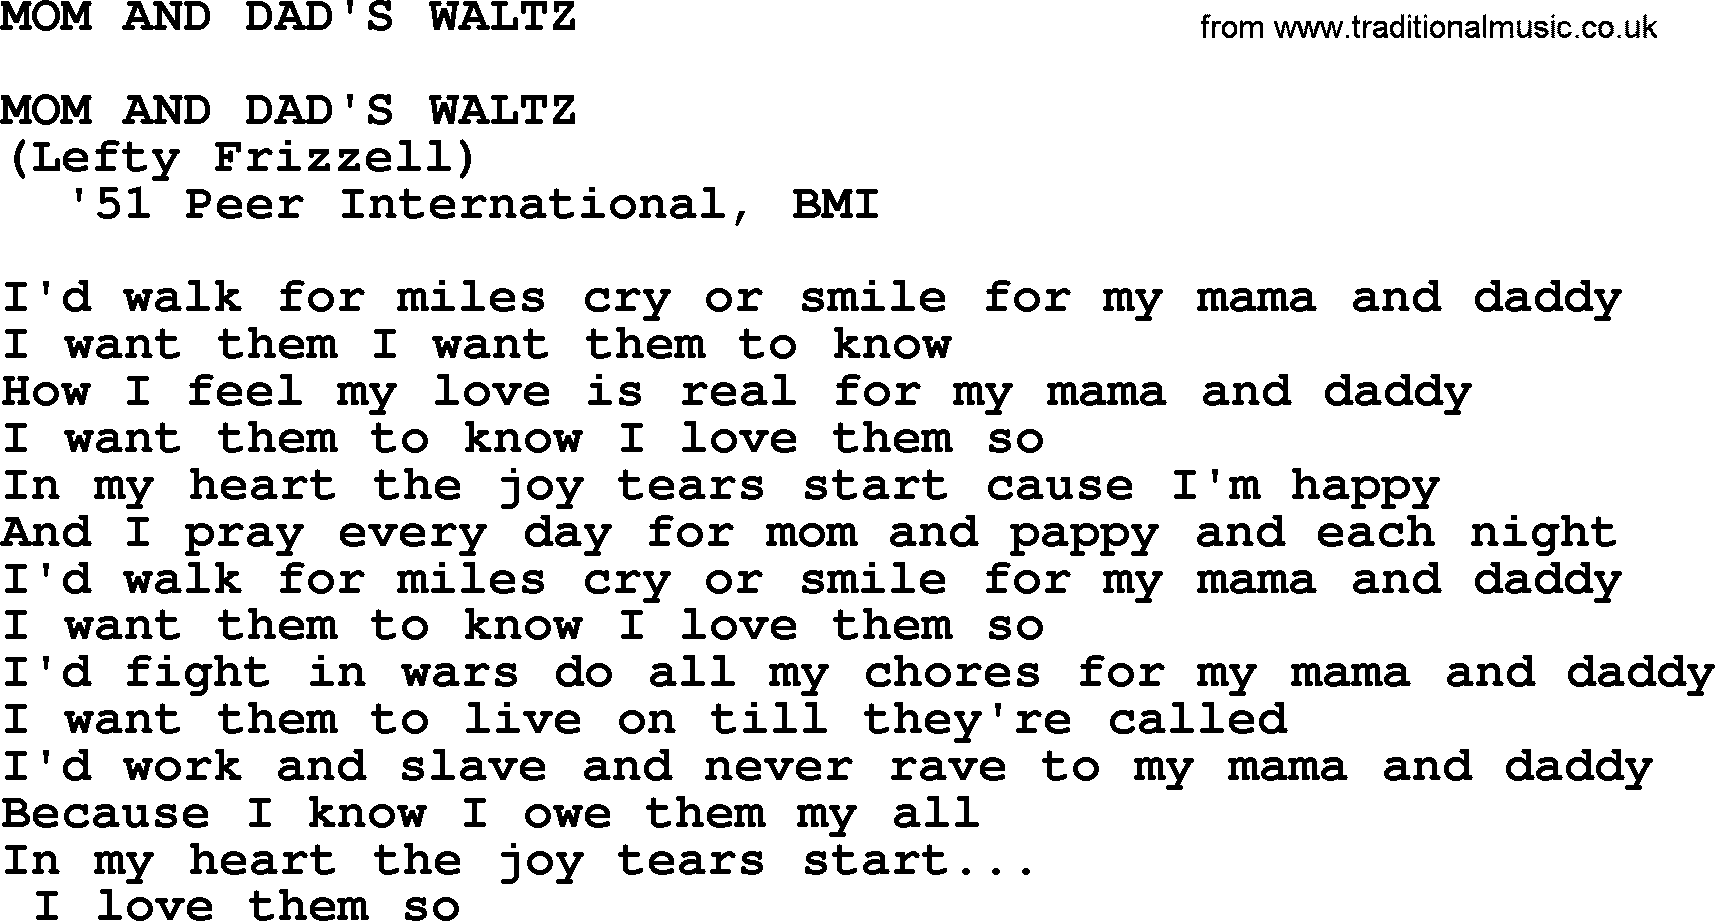 Merle Haggard song: Mom And Dad's Waltz, lyrics.